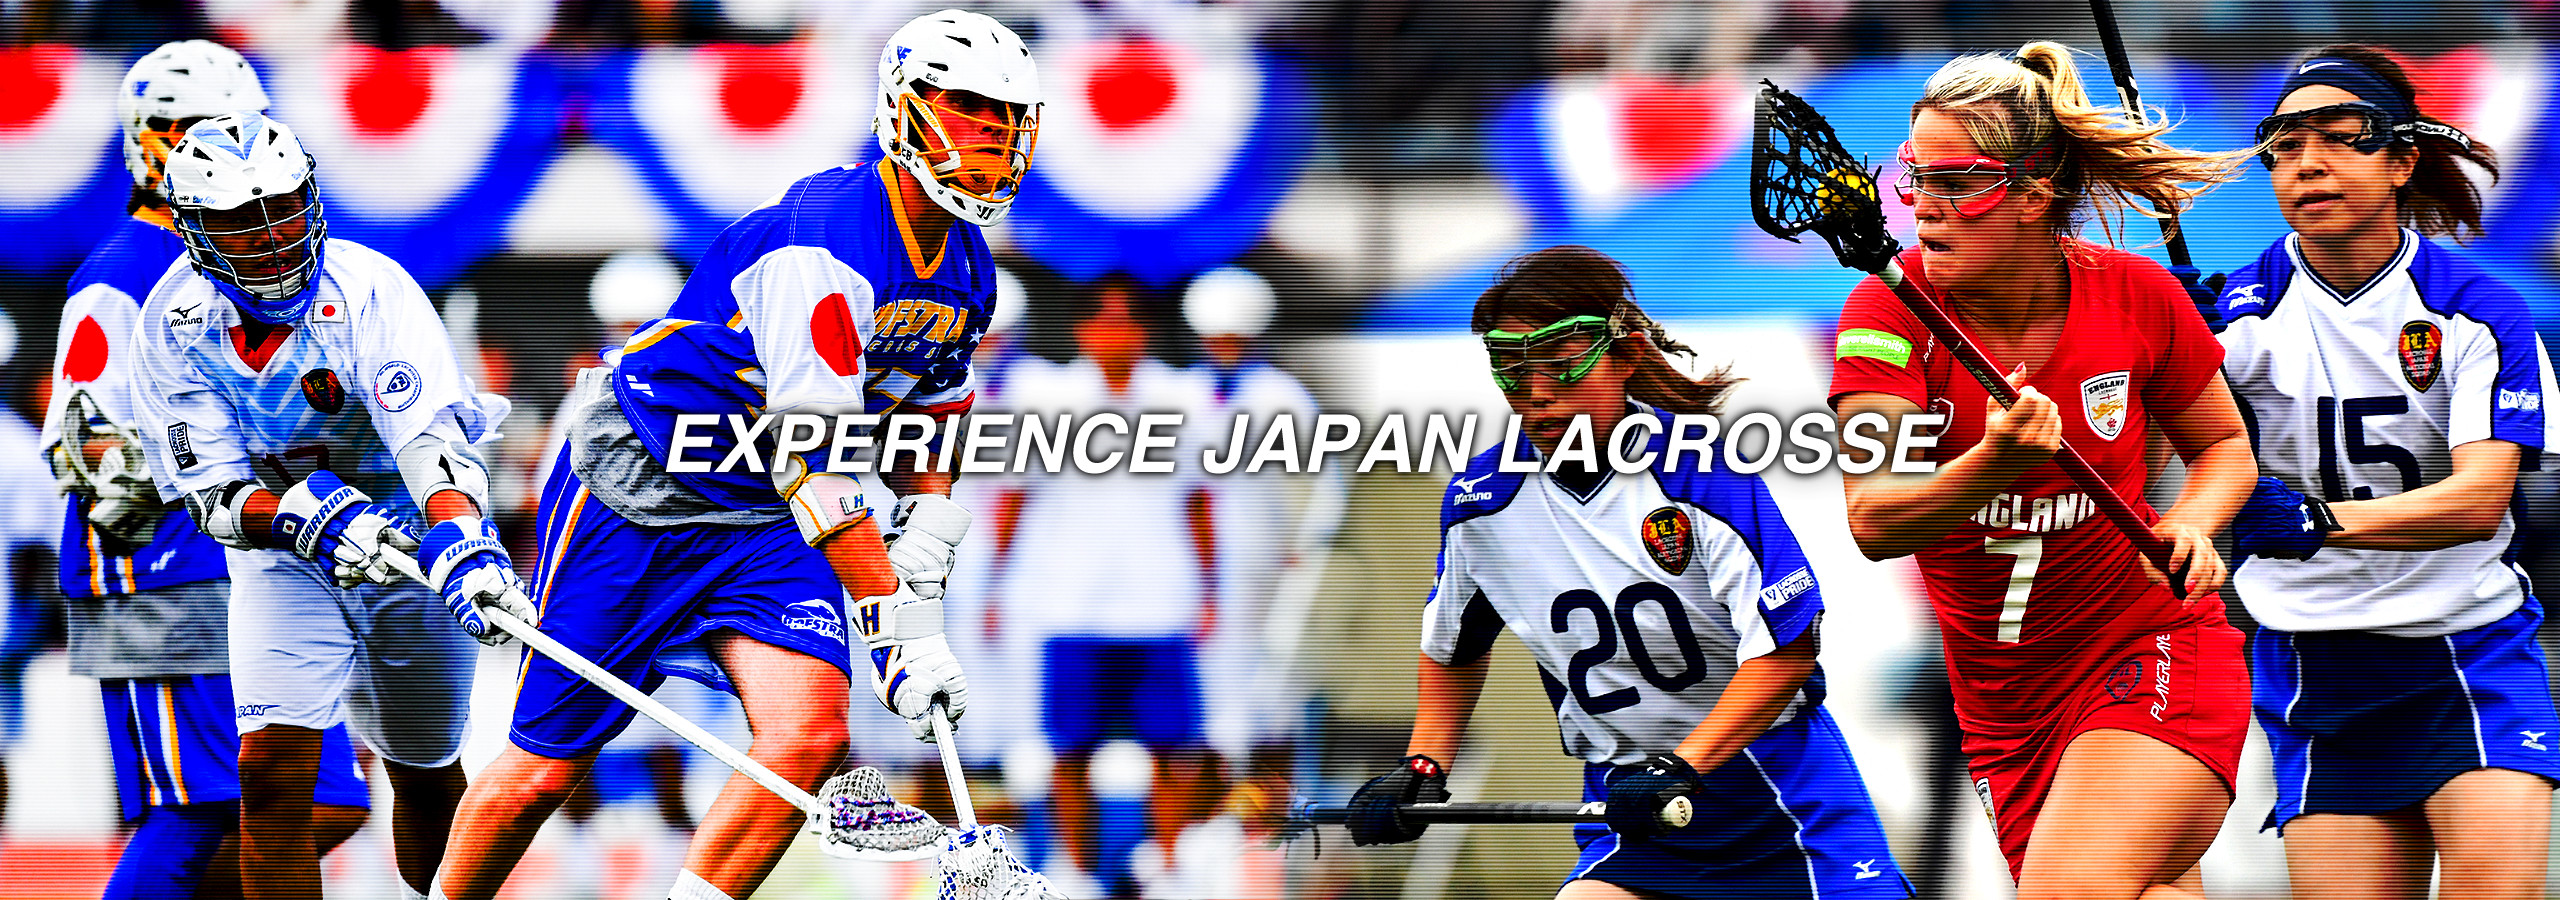 EXPERIENCE JAPAN LACROSSE